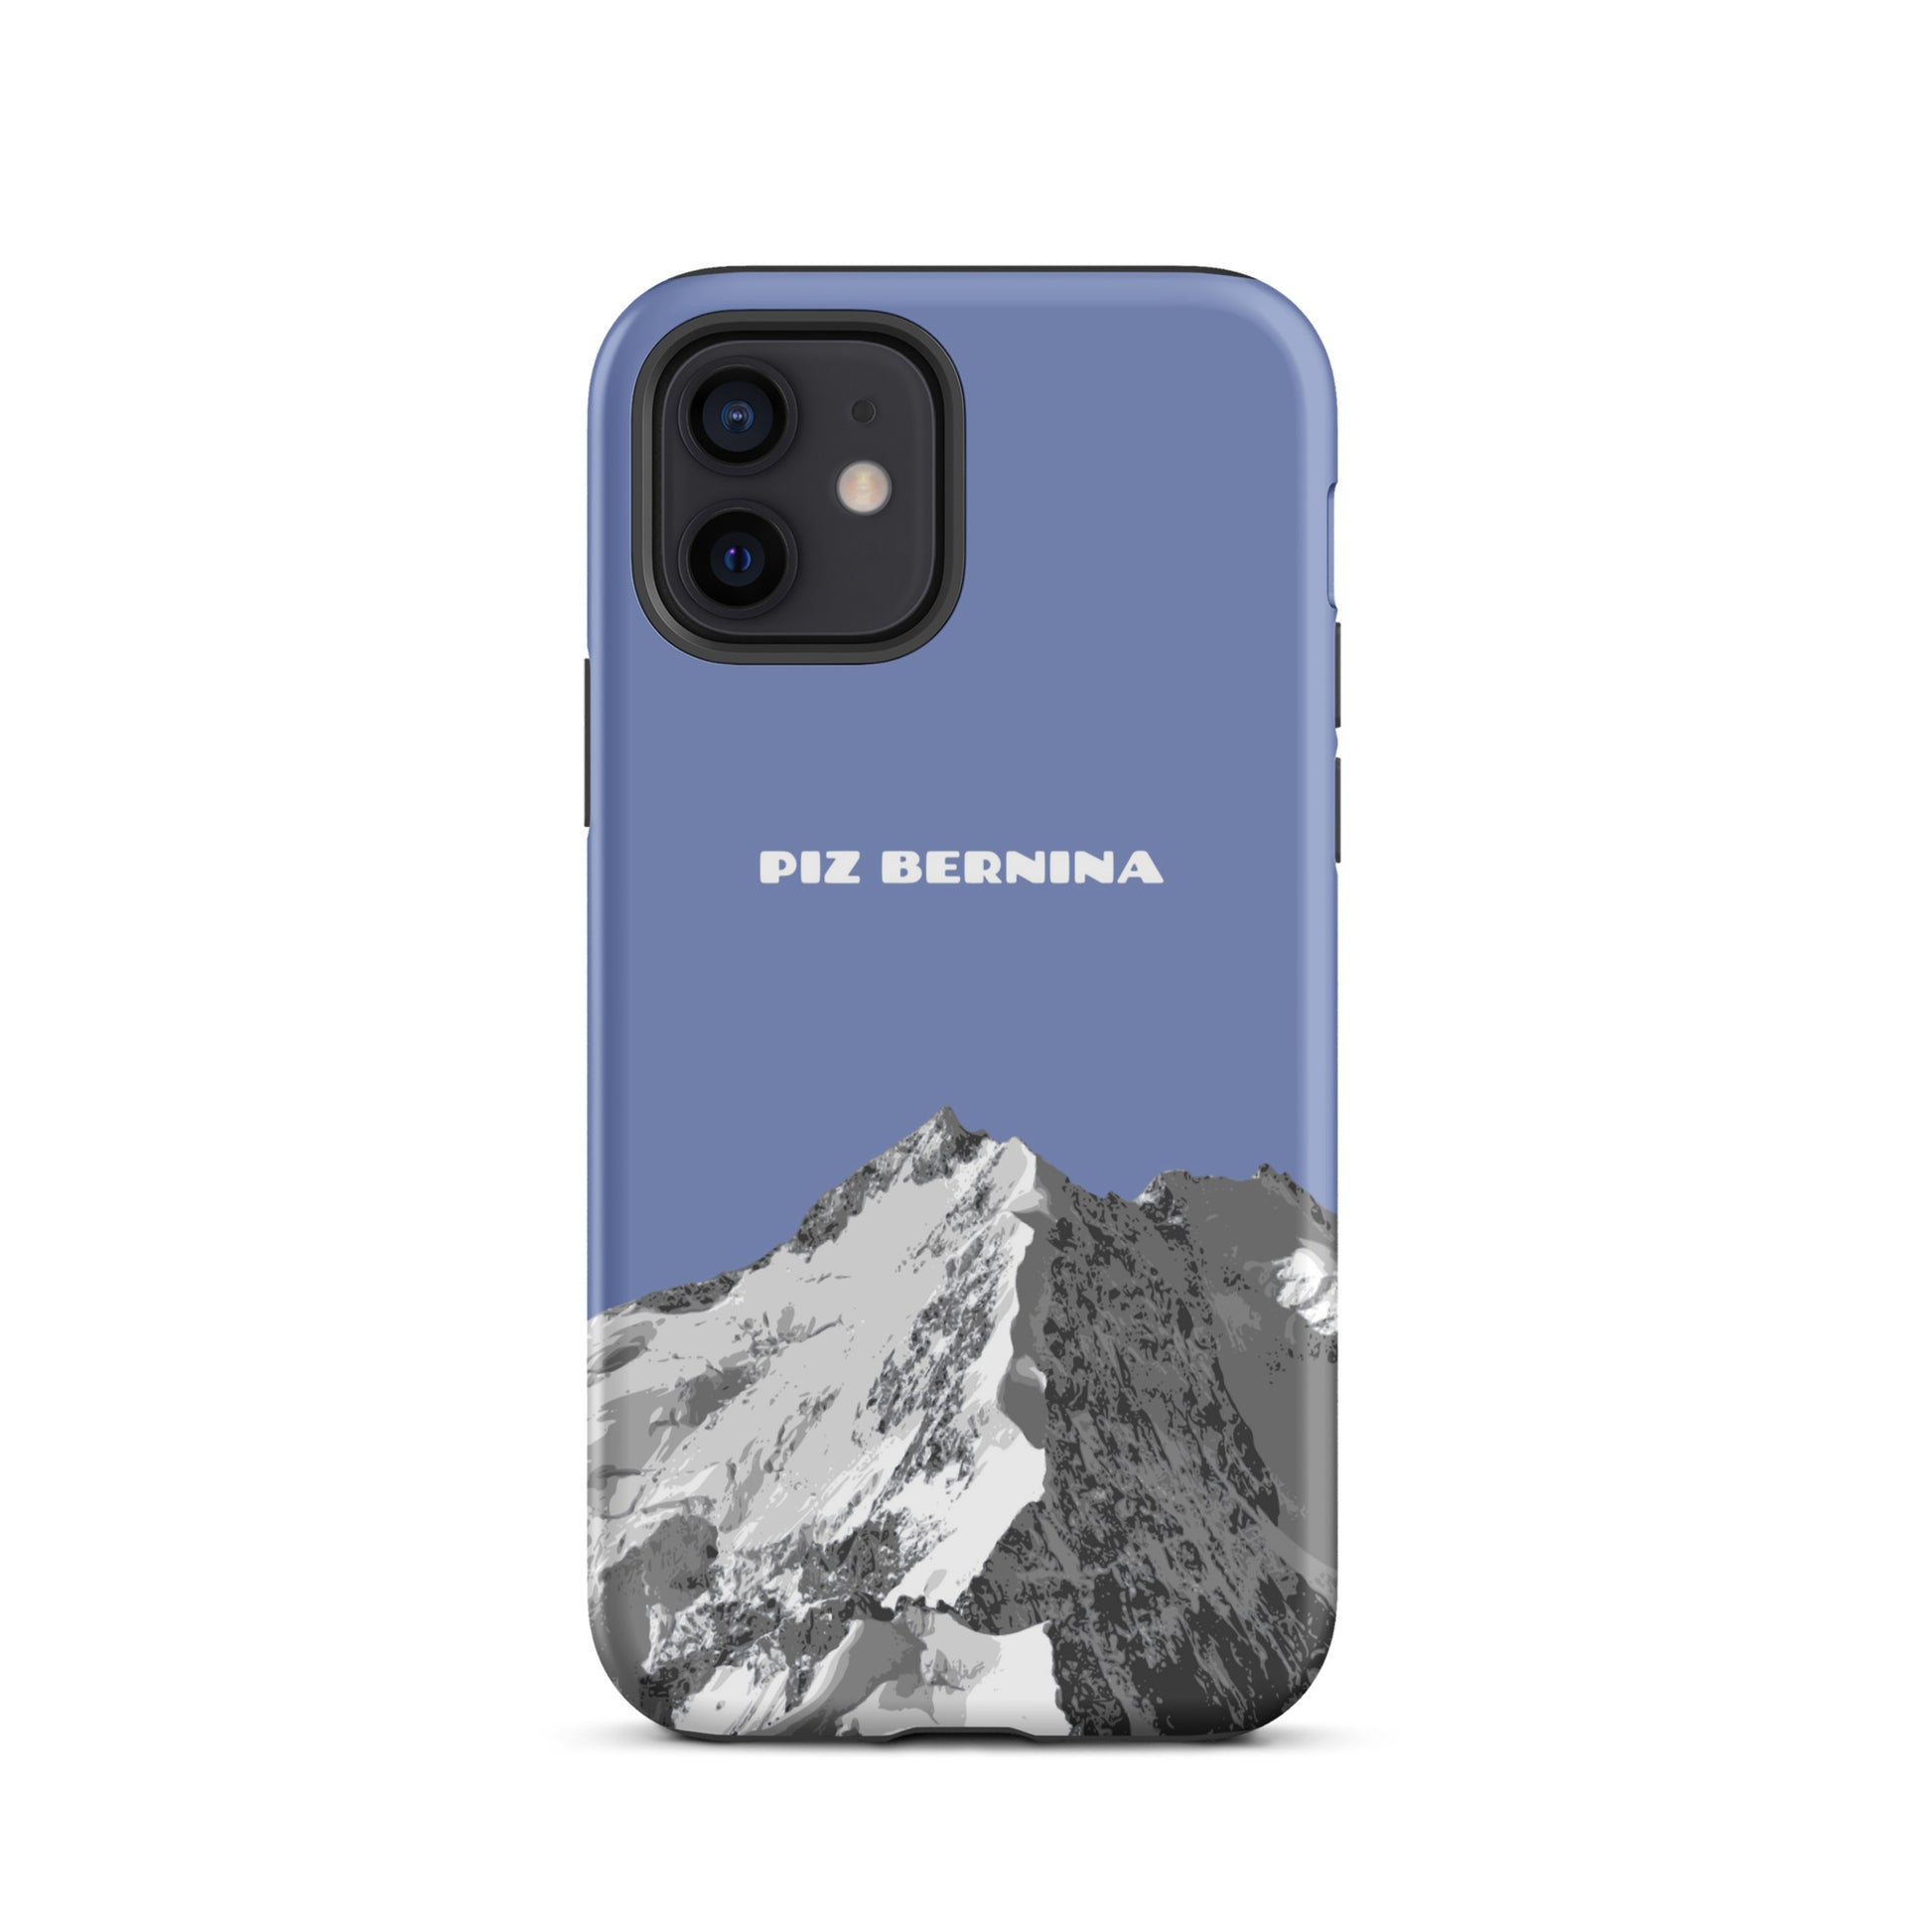 Hülle für das iPhone 12 von Apple in der Farbe Pastellblau, dass den Piz Bernina in Graubünden zeigt.